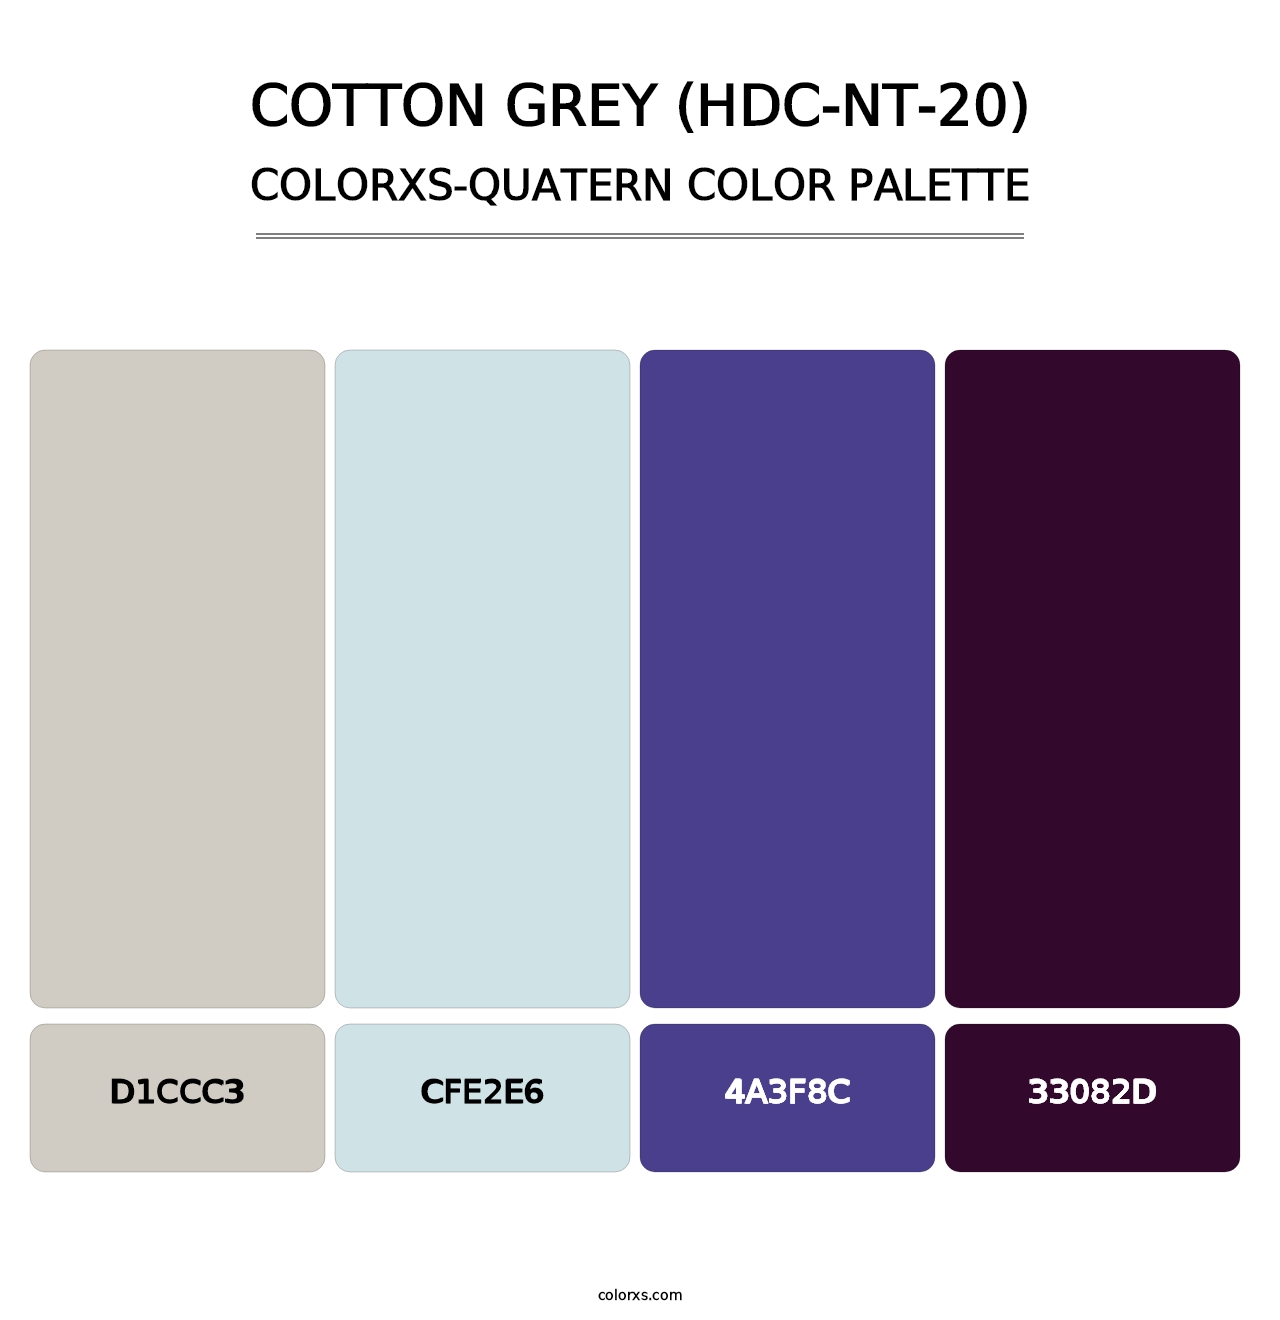 Cotton Grey (HDC-NT-20) - Colorxs Quatern Palette